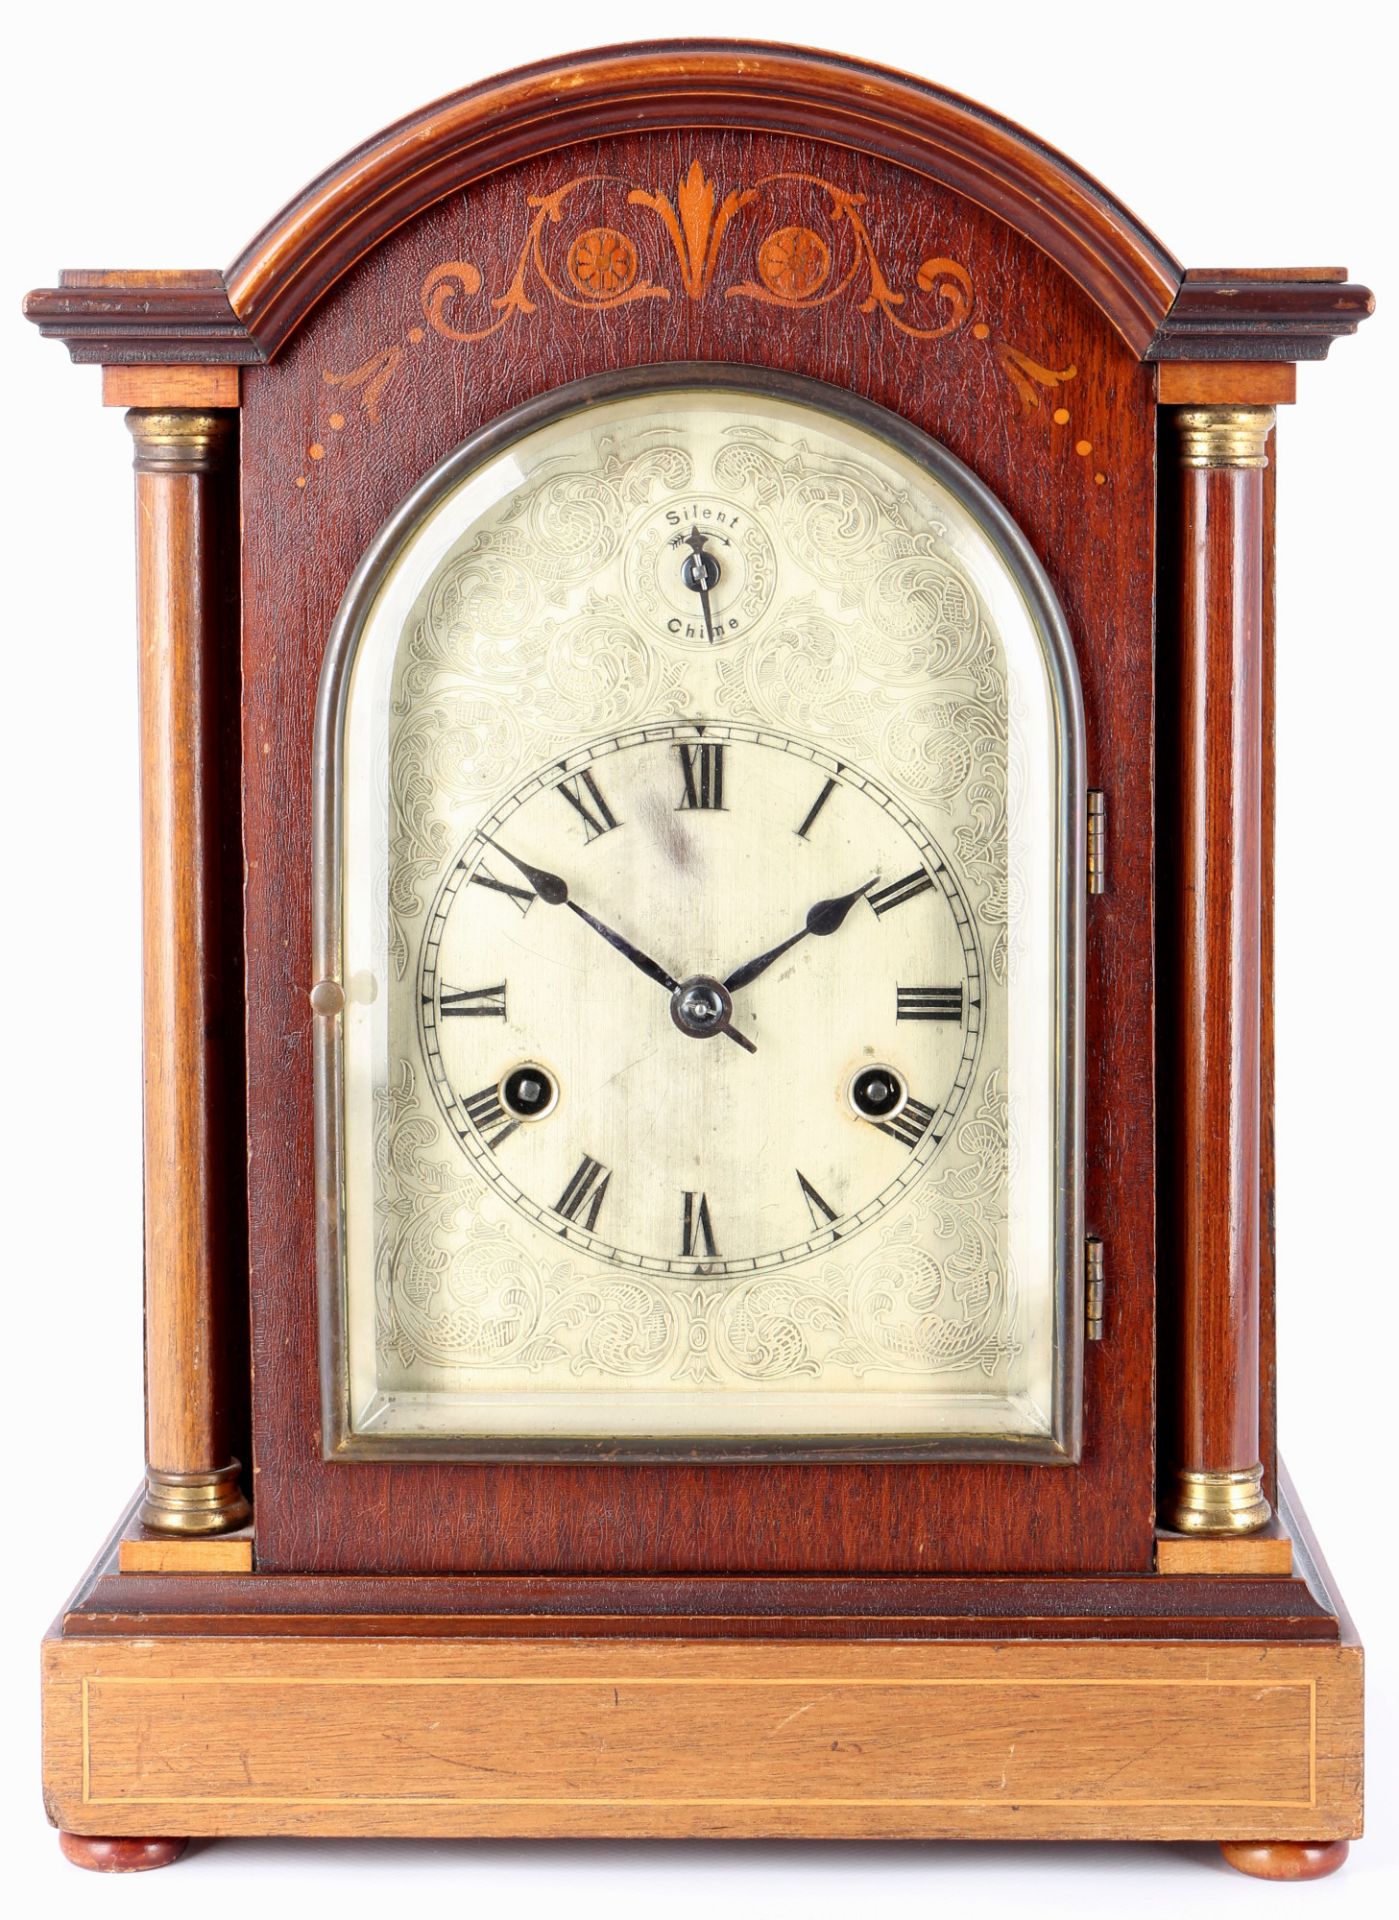 Mantel clock around 1900, Pfeilkreuz, Tischuhr um 1900,